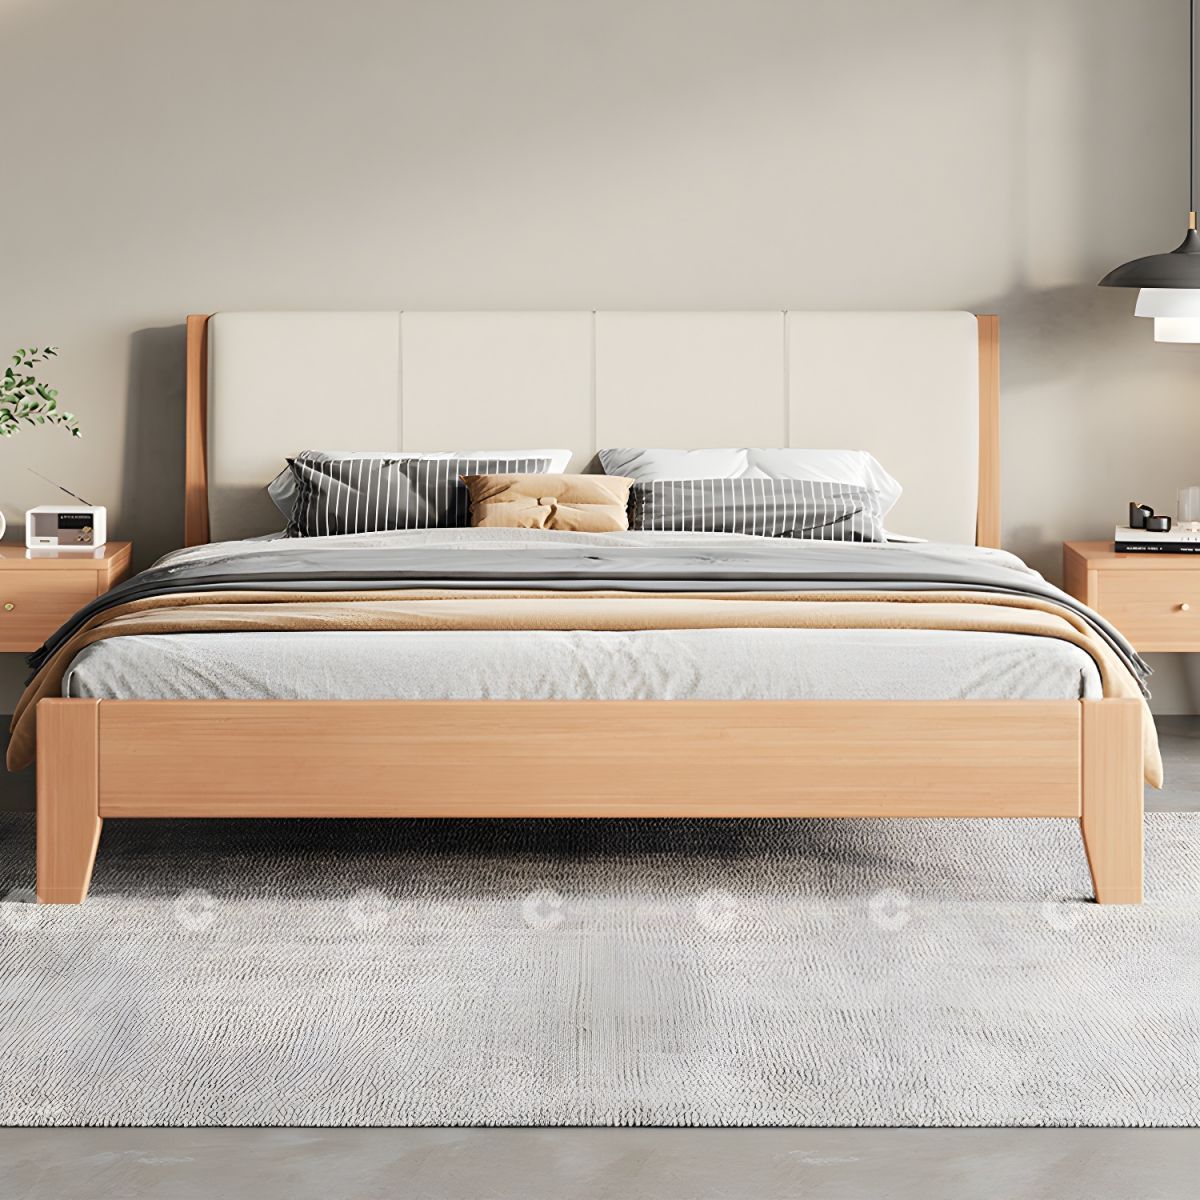 Giường ngủ gỗ tự nhiên có bọc nệm đầu giường